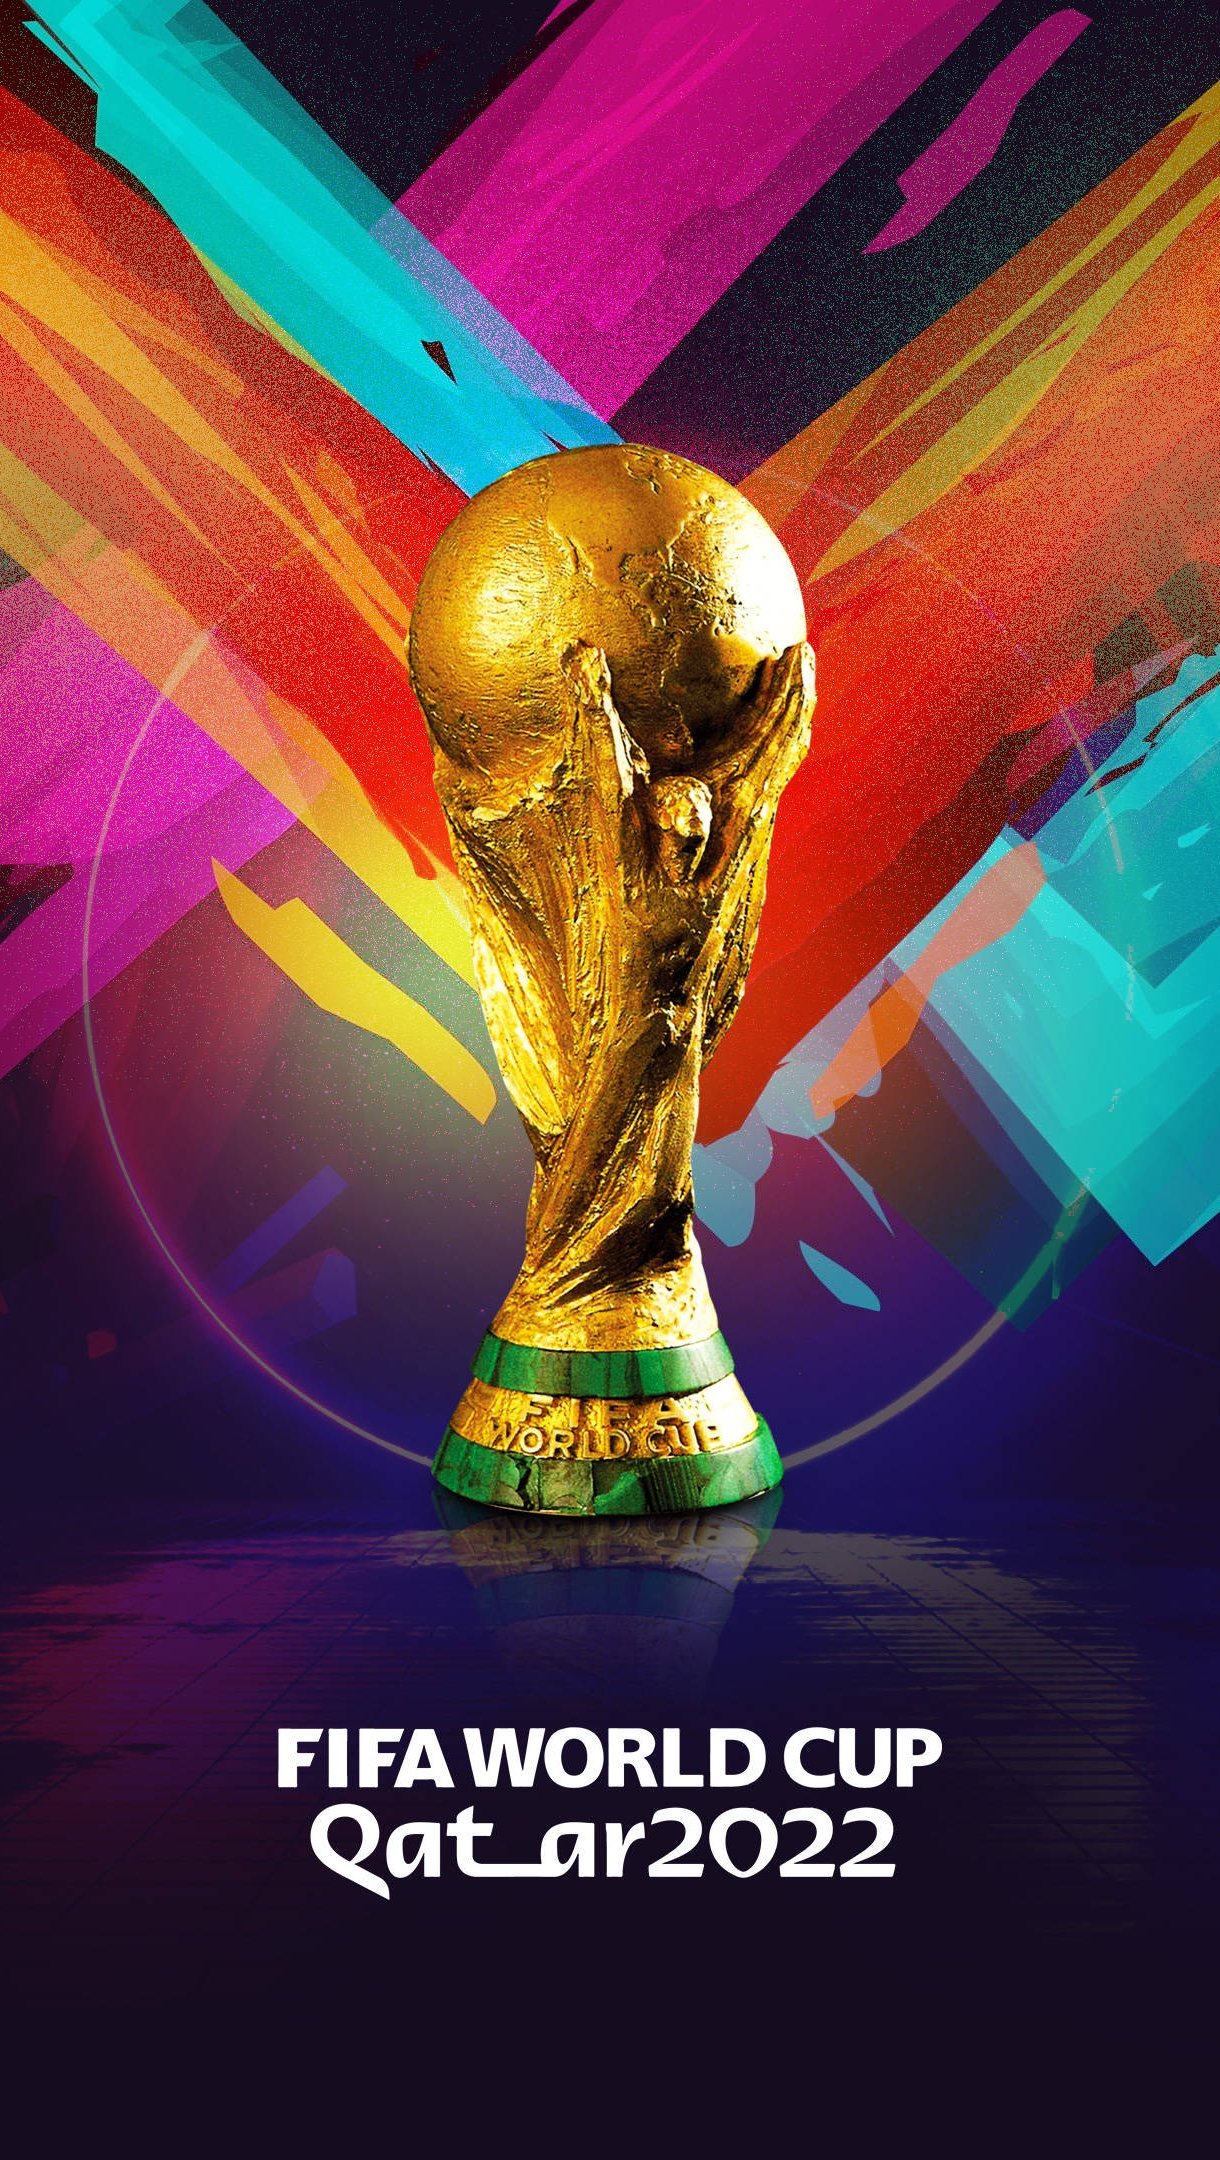 Copa Mundial de la FIFA Catar 2022 Fondo de pantalla 4k Ultra HD ID:11213